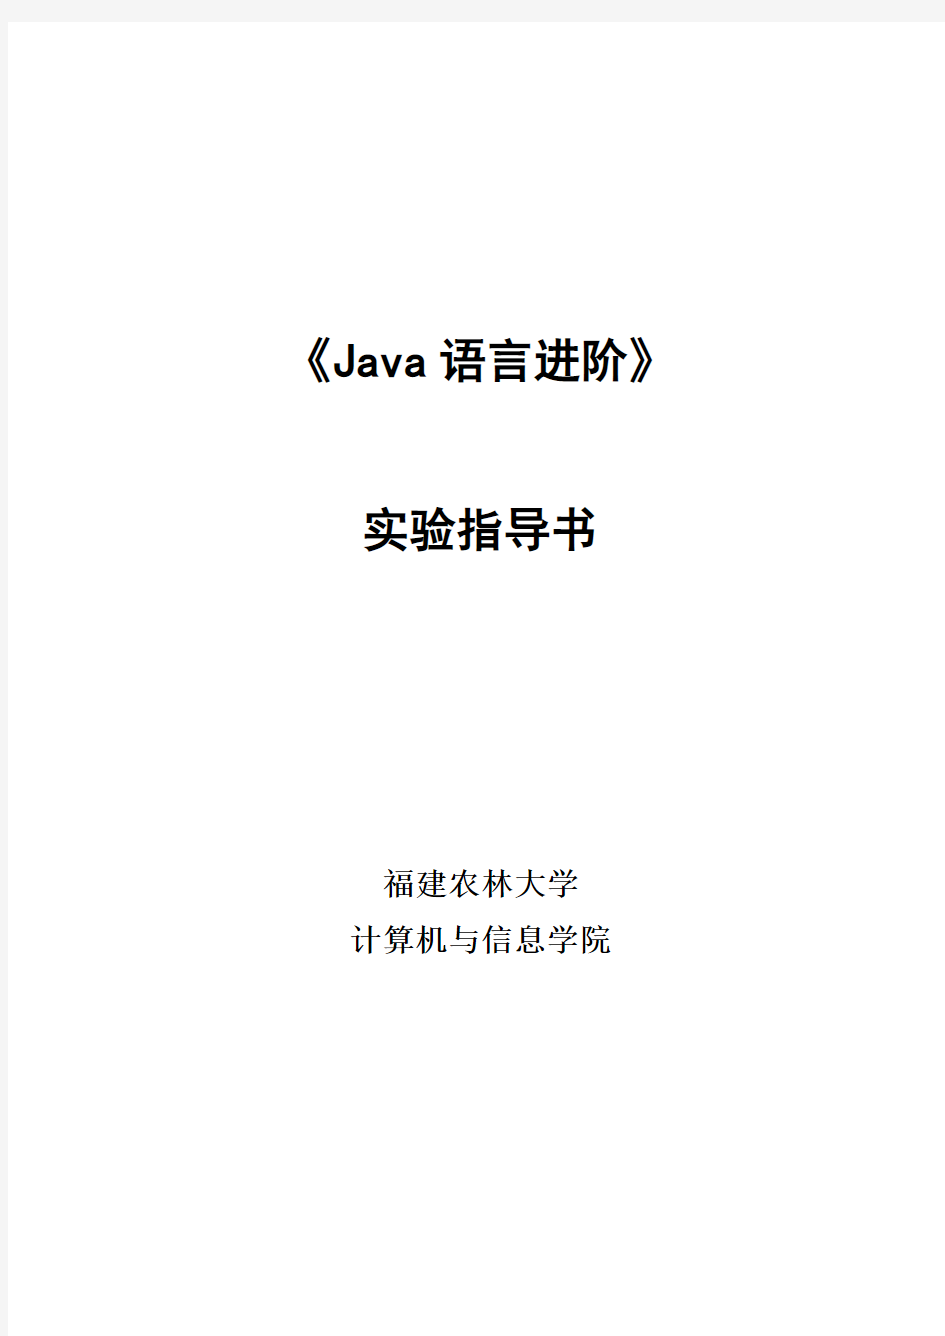 Java语言进阶实验指导书[1]